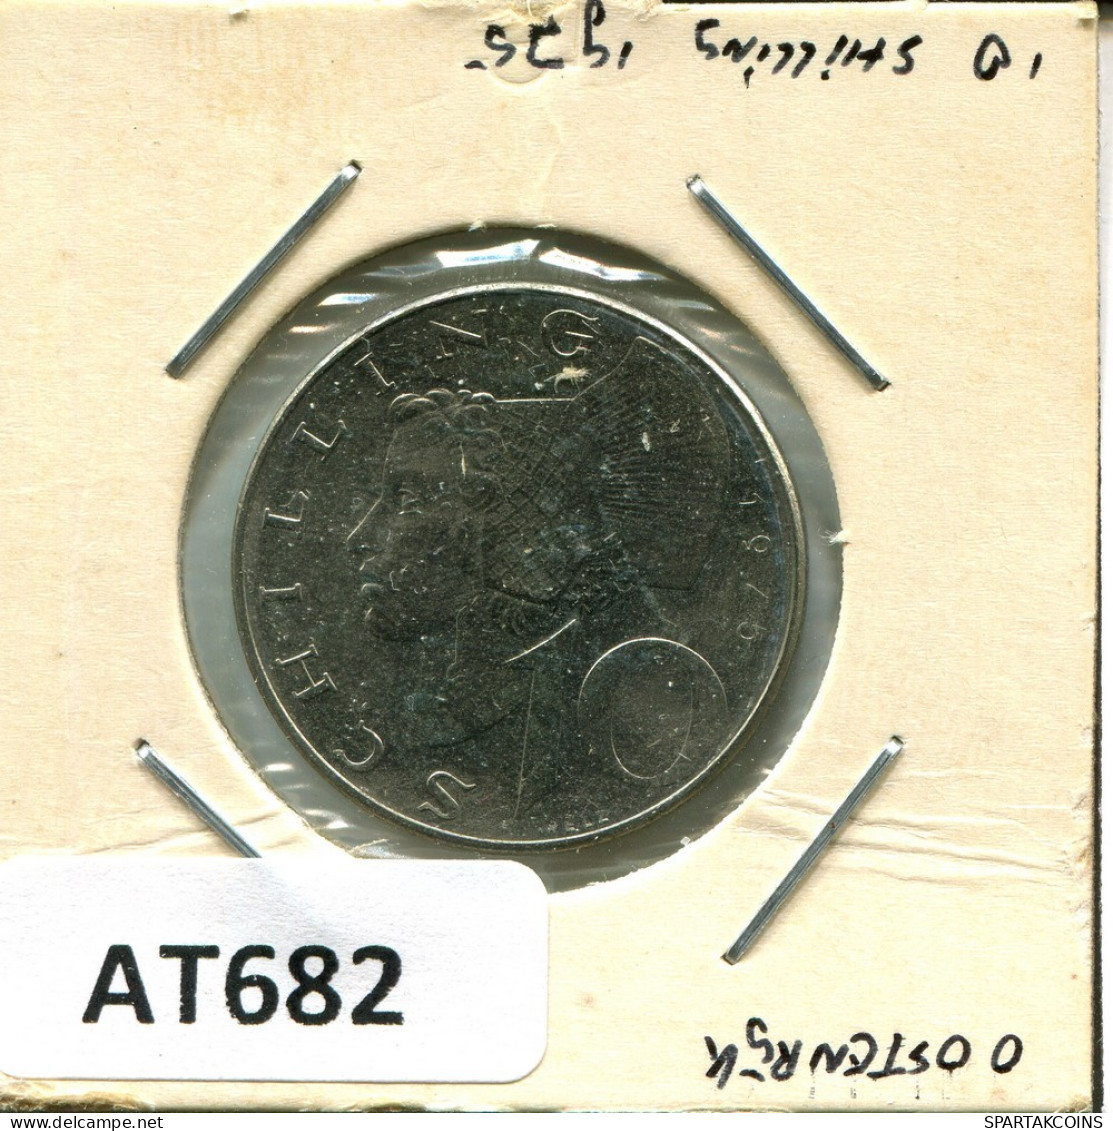 10 SCHILLING 1975 AUSTRIA Coin #AT682.U.A - Austria